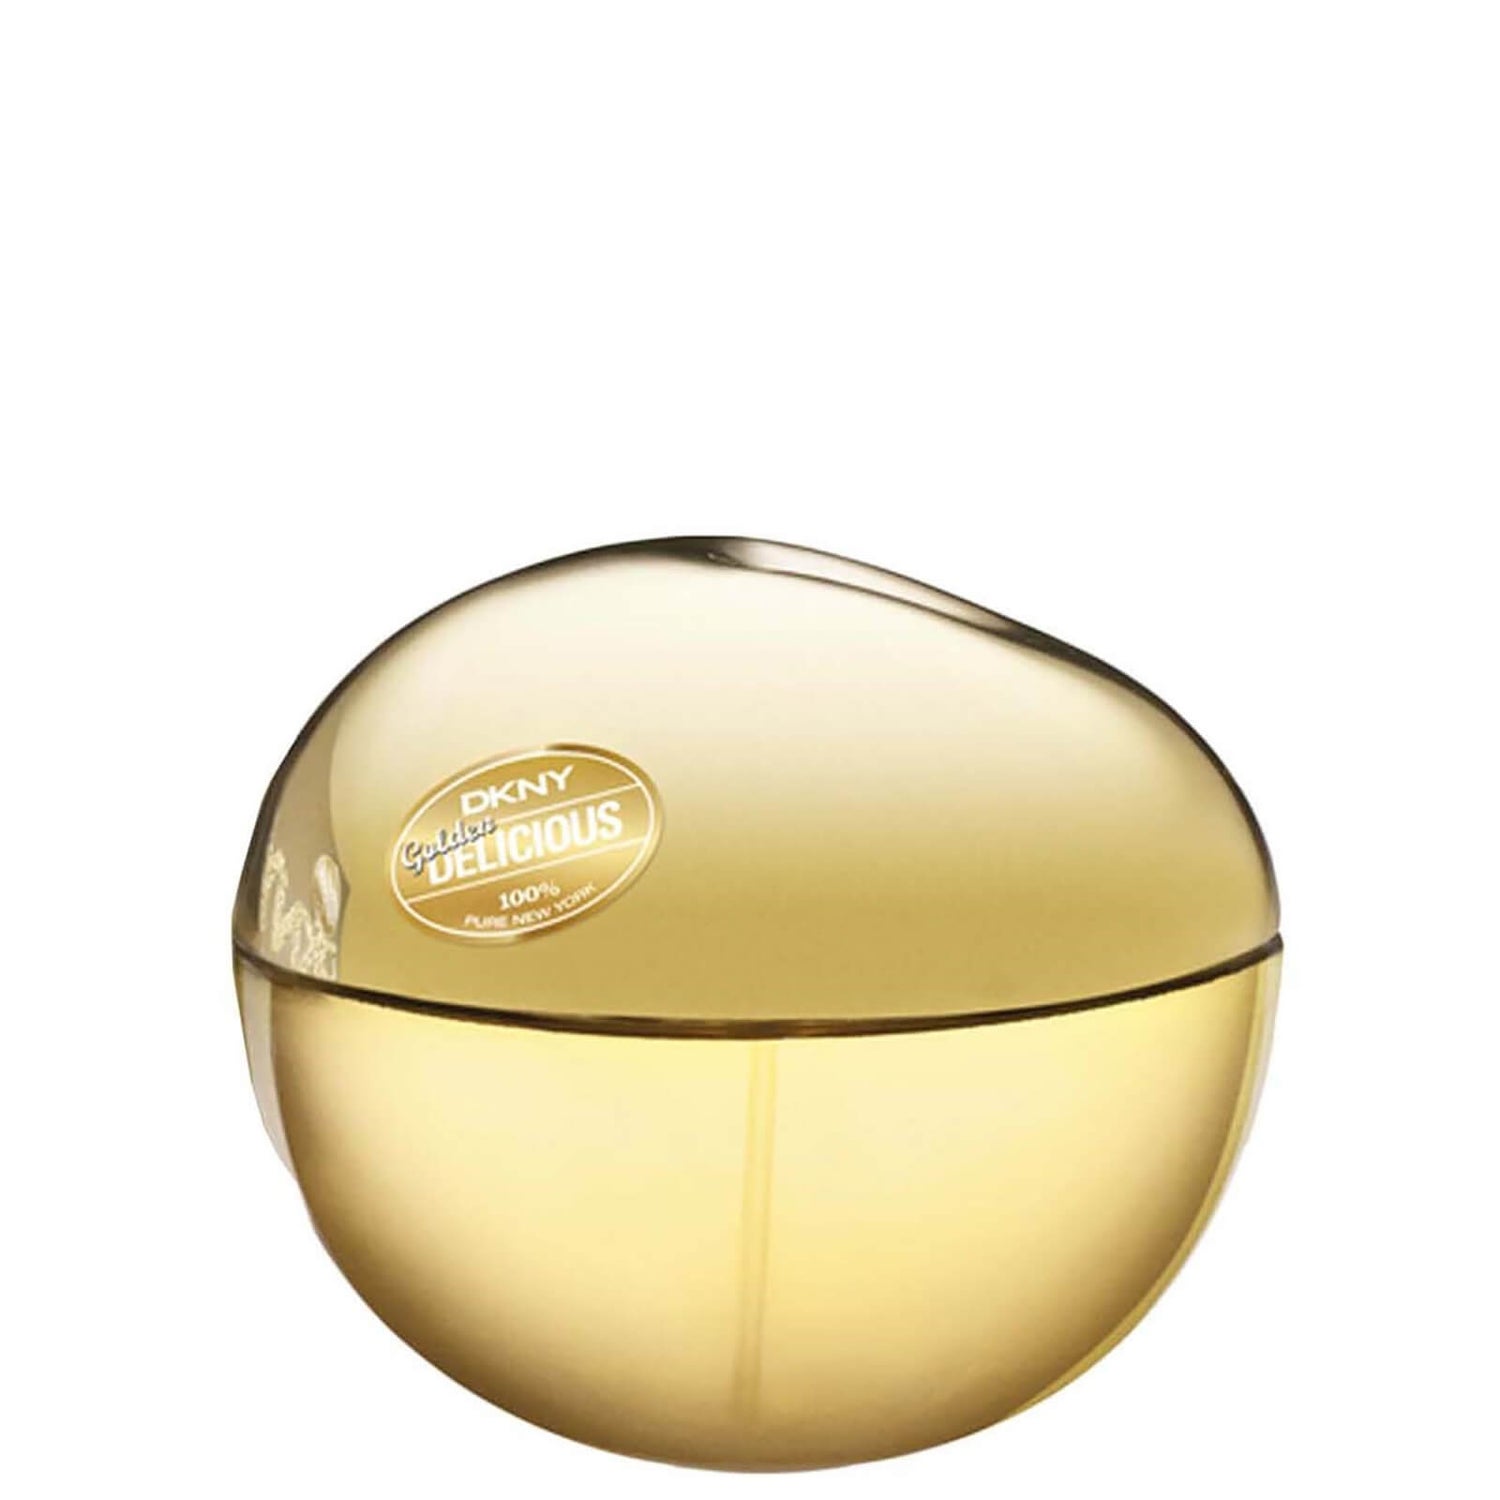 DKNY Golden Delicious Eau de Parfum 100ml